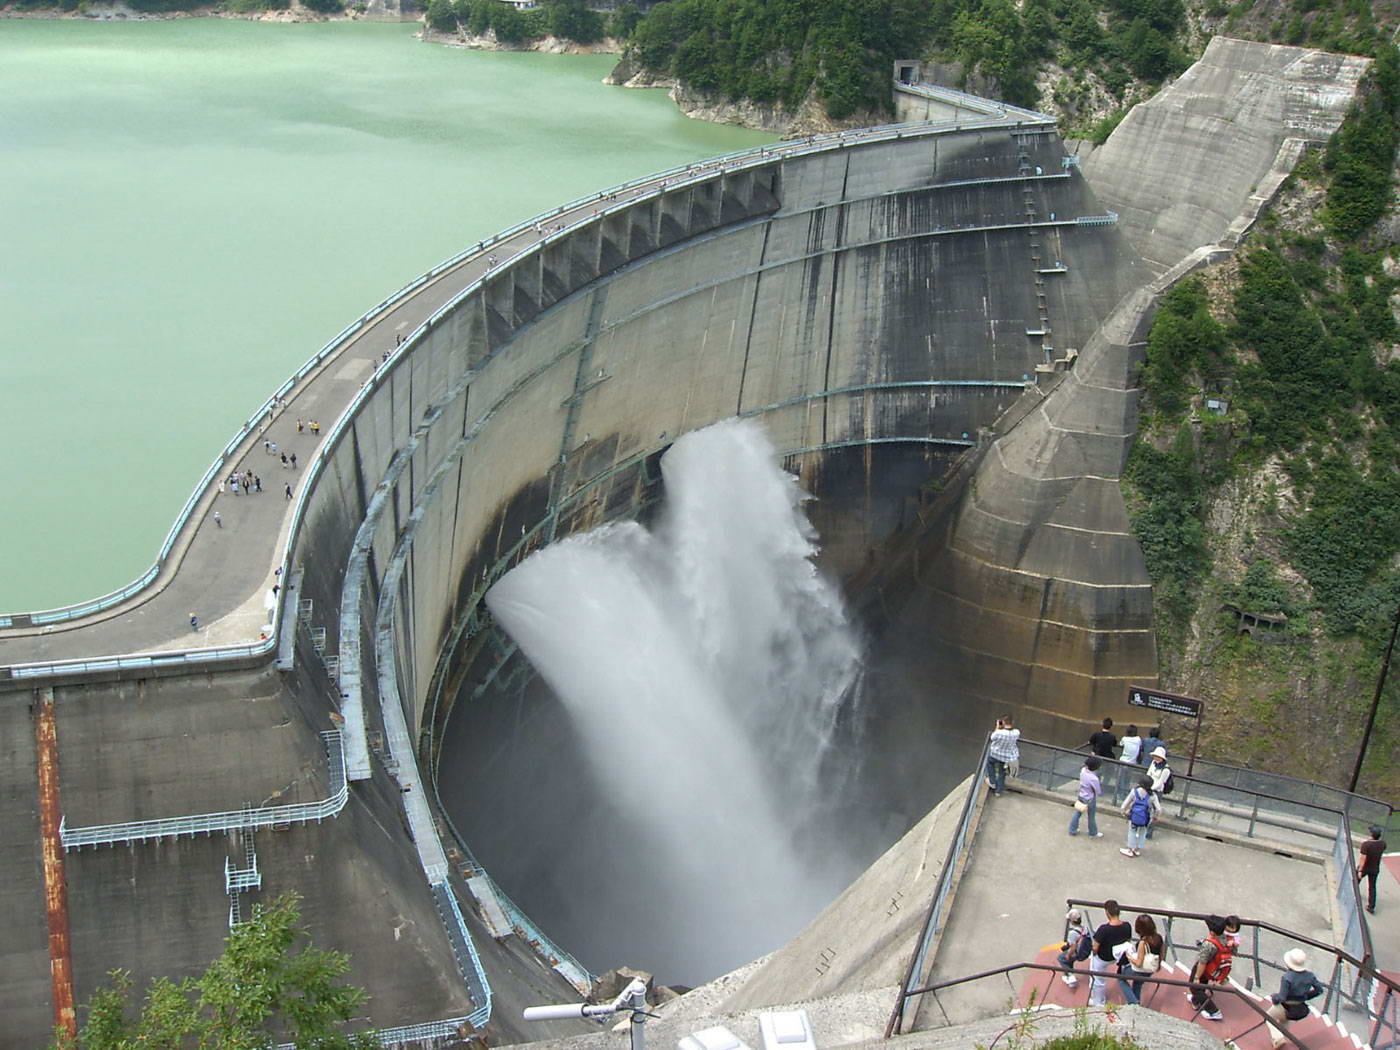 http://lenergeek.com/wp-content/uploads/2012/04/centrale-hydroelectrique.jpg